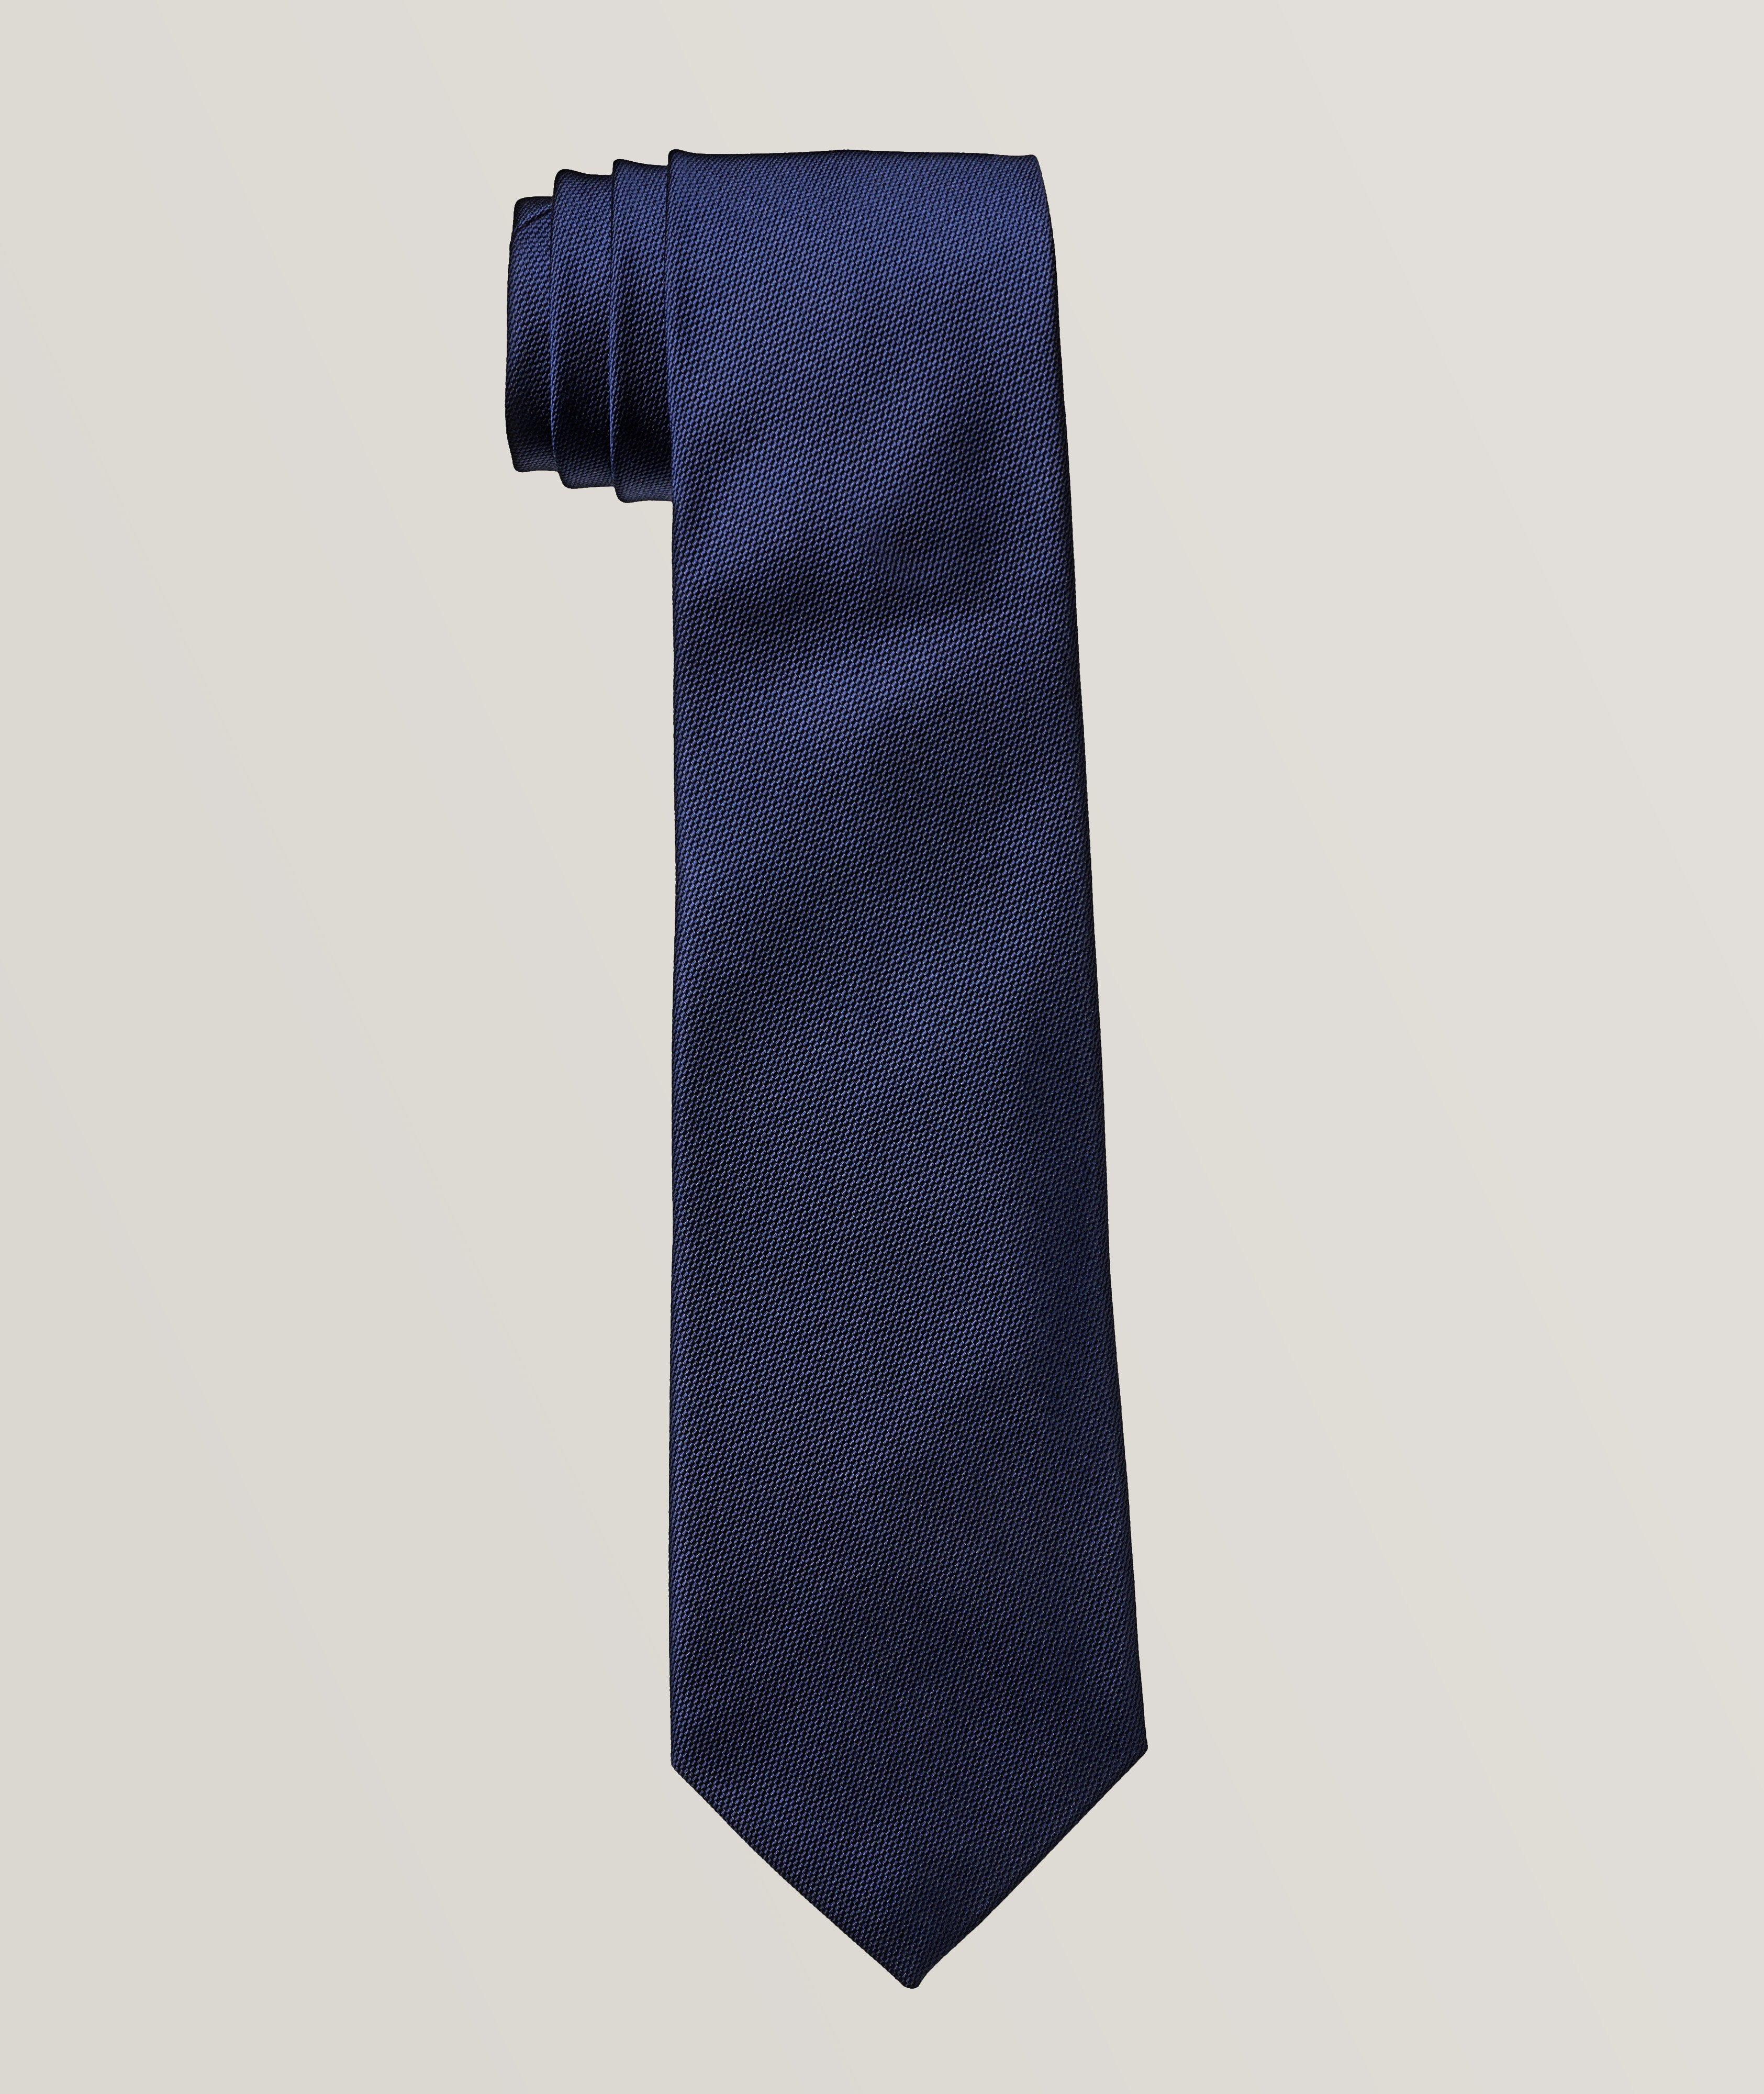 Cravate en soie texturée image 0